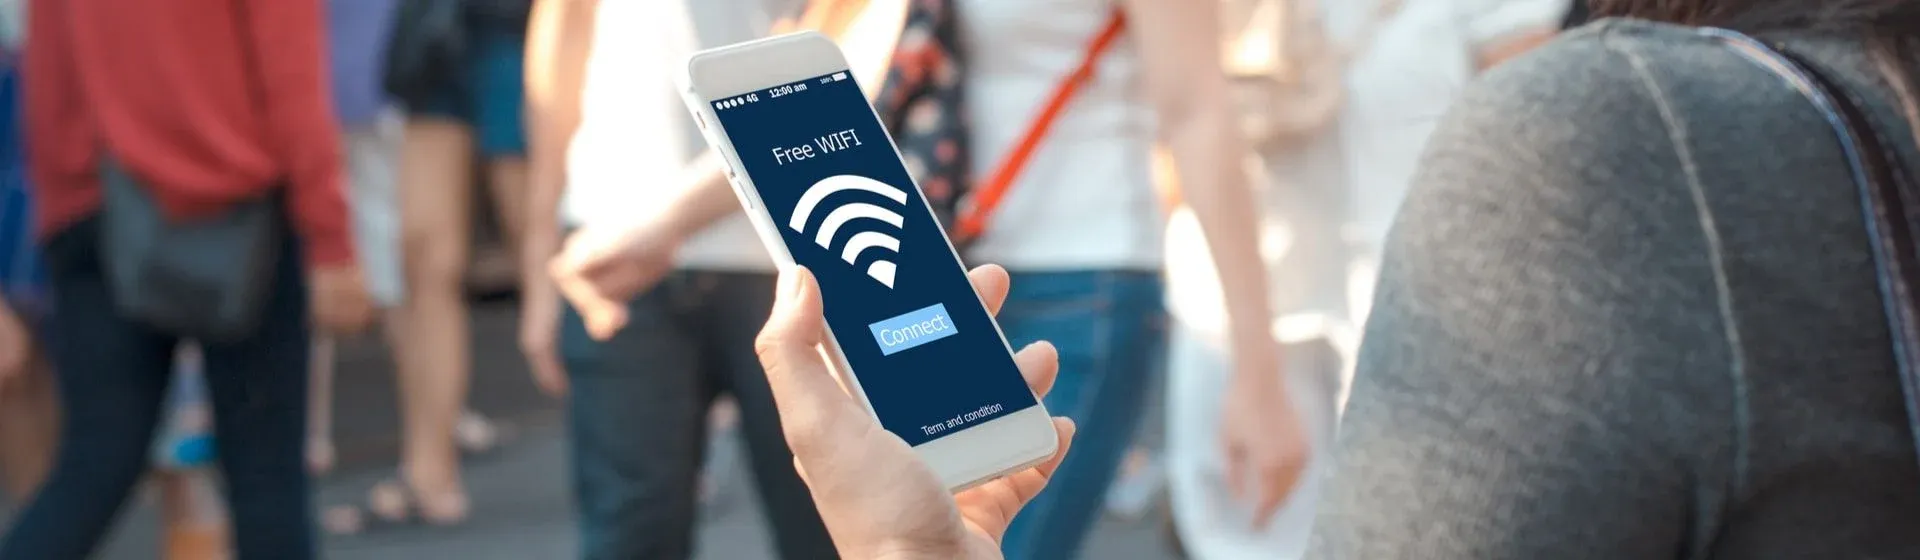 Saiba como descobrir senha de Wi-Fi pelo celular com os melhores apps